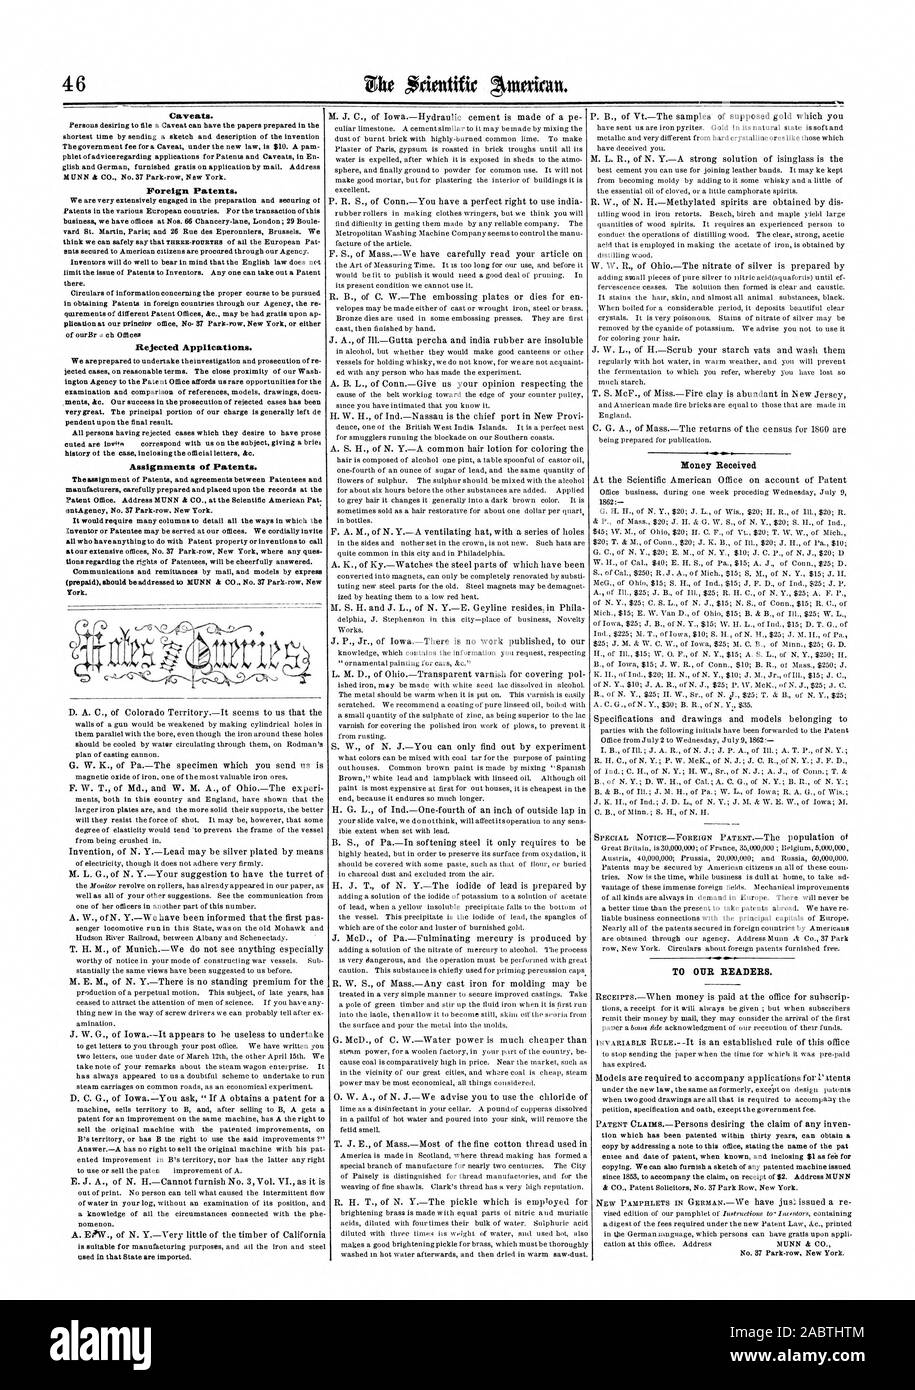 Brevetti stranieri. Le domande respinte. Le assegnazioni dei brevetti. Per i nostri lettori., Scientific American, 1862-07-19 Foto Stock